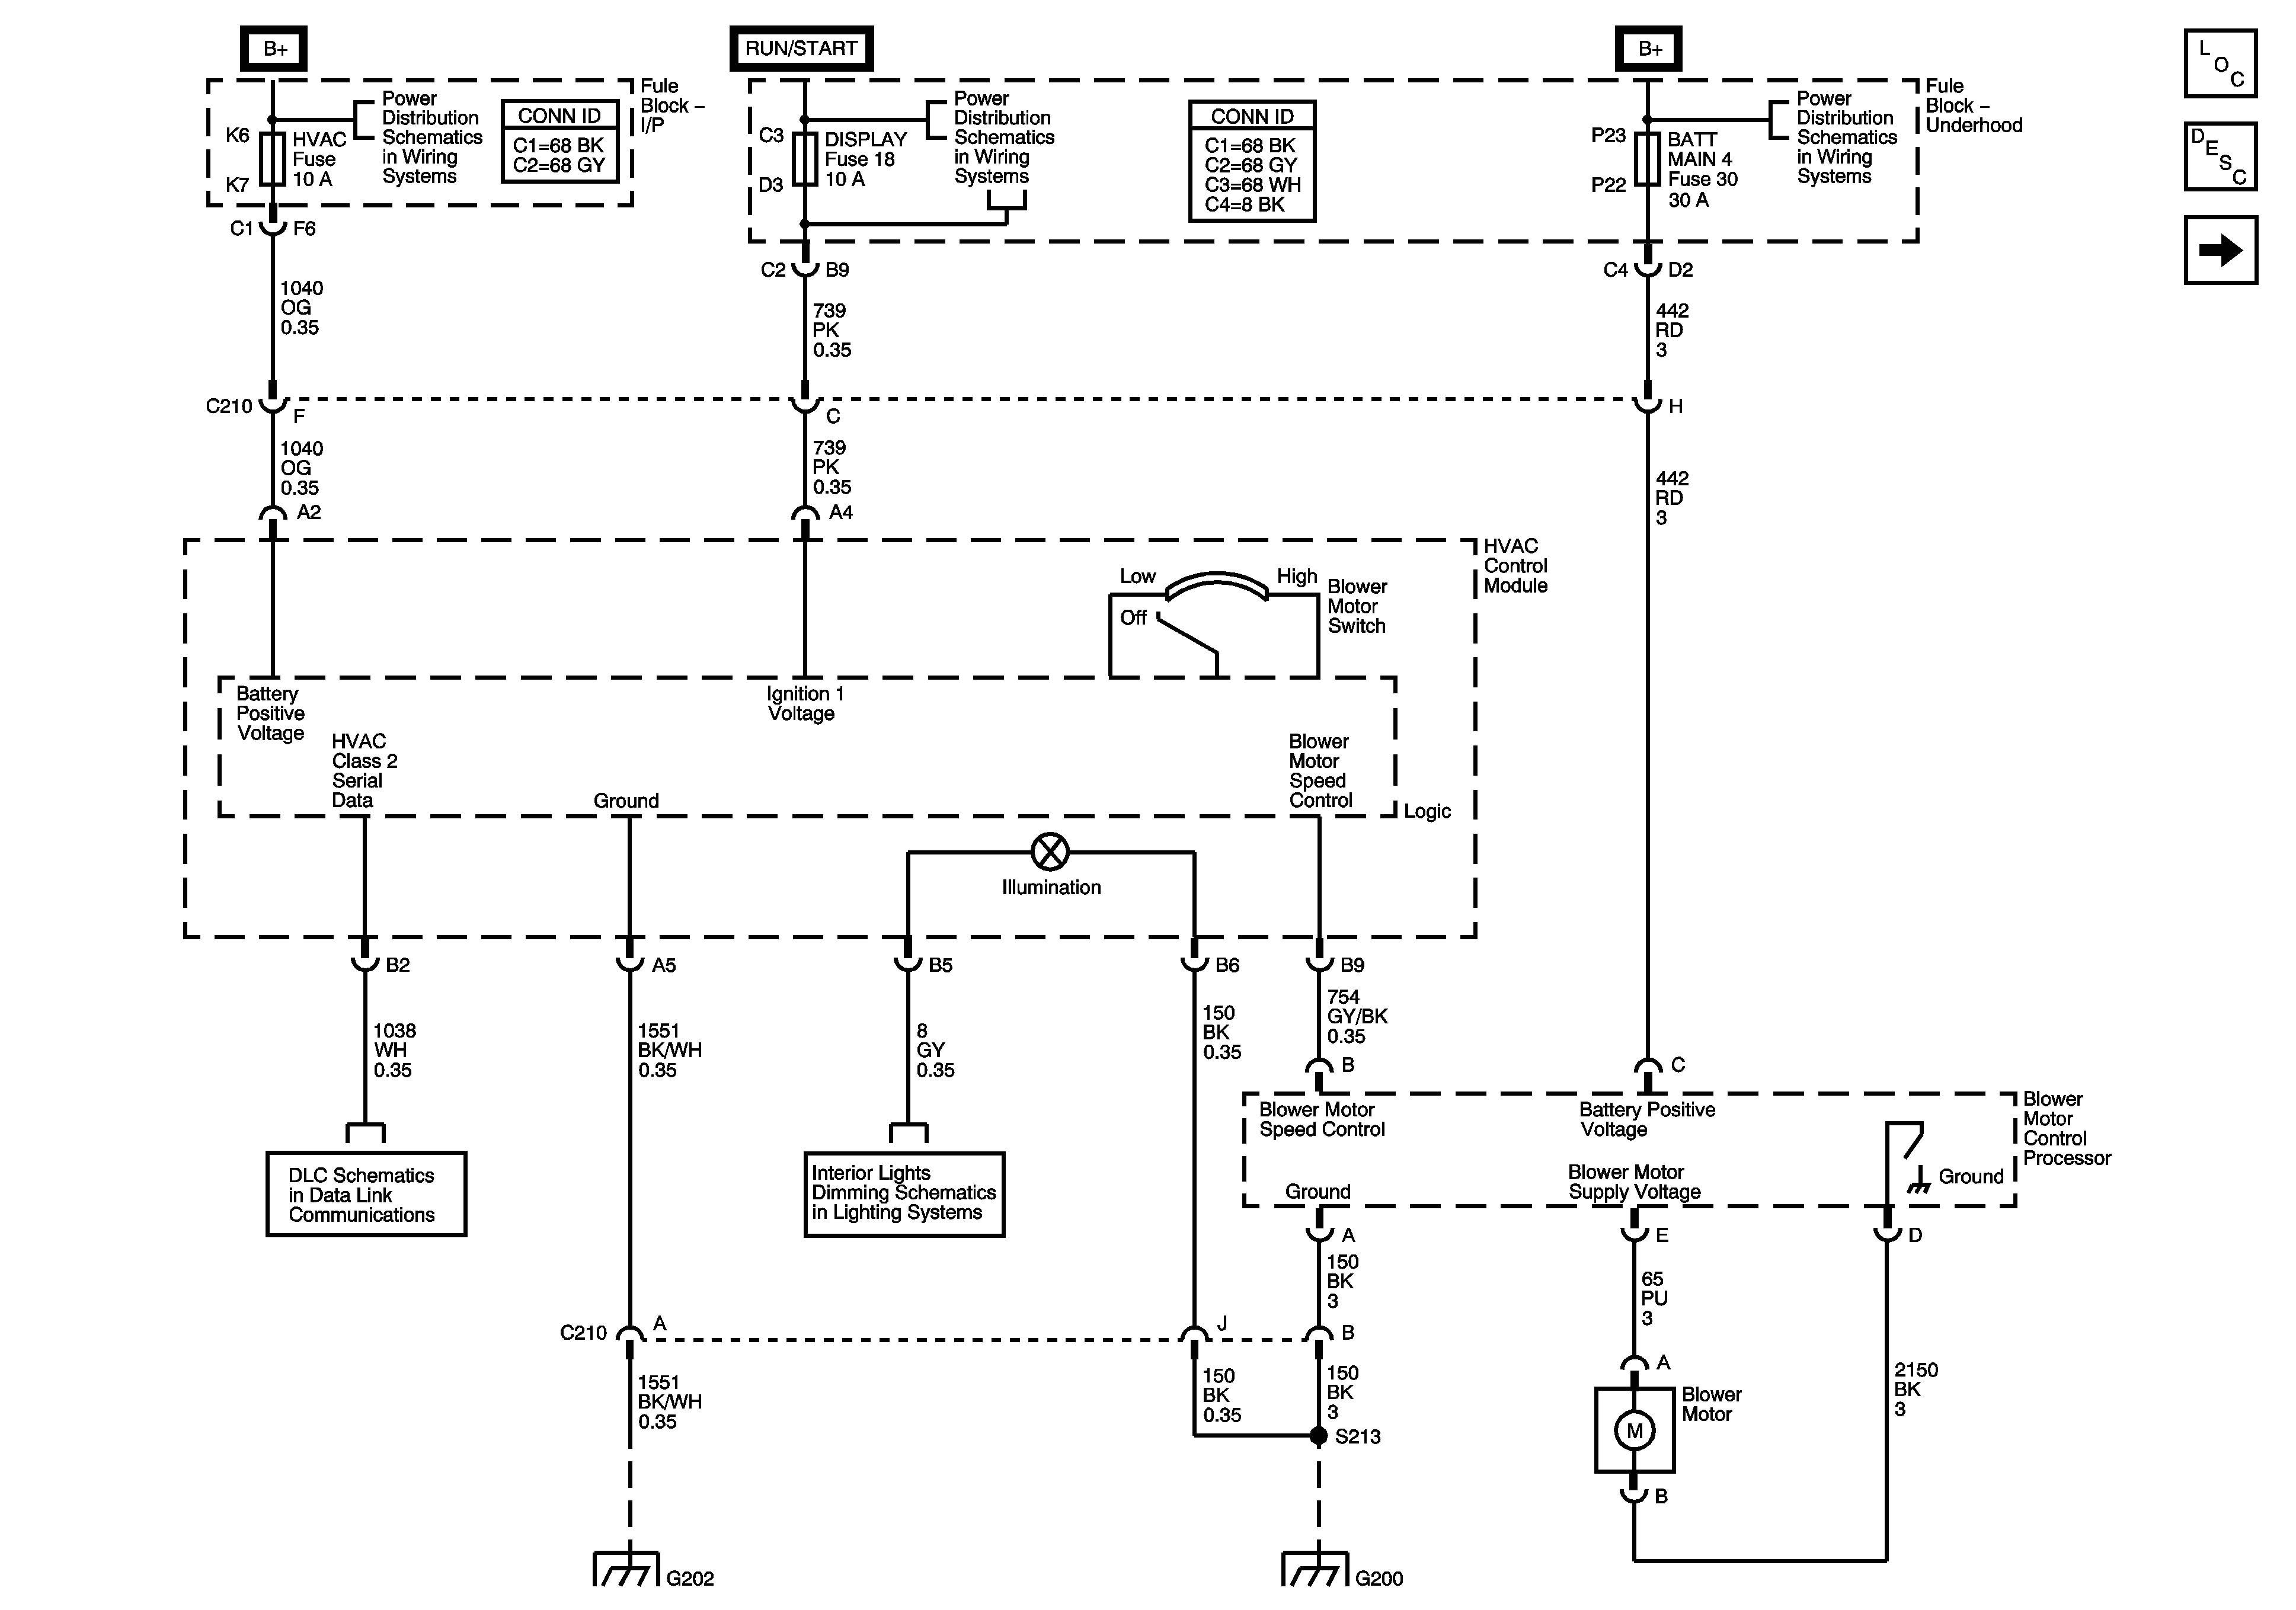 2002 grand prix wiring diagram free download wiring diagram user 2000 gtp wiring diagram free download schematic